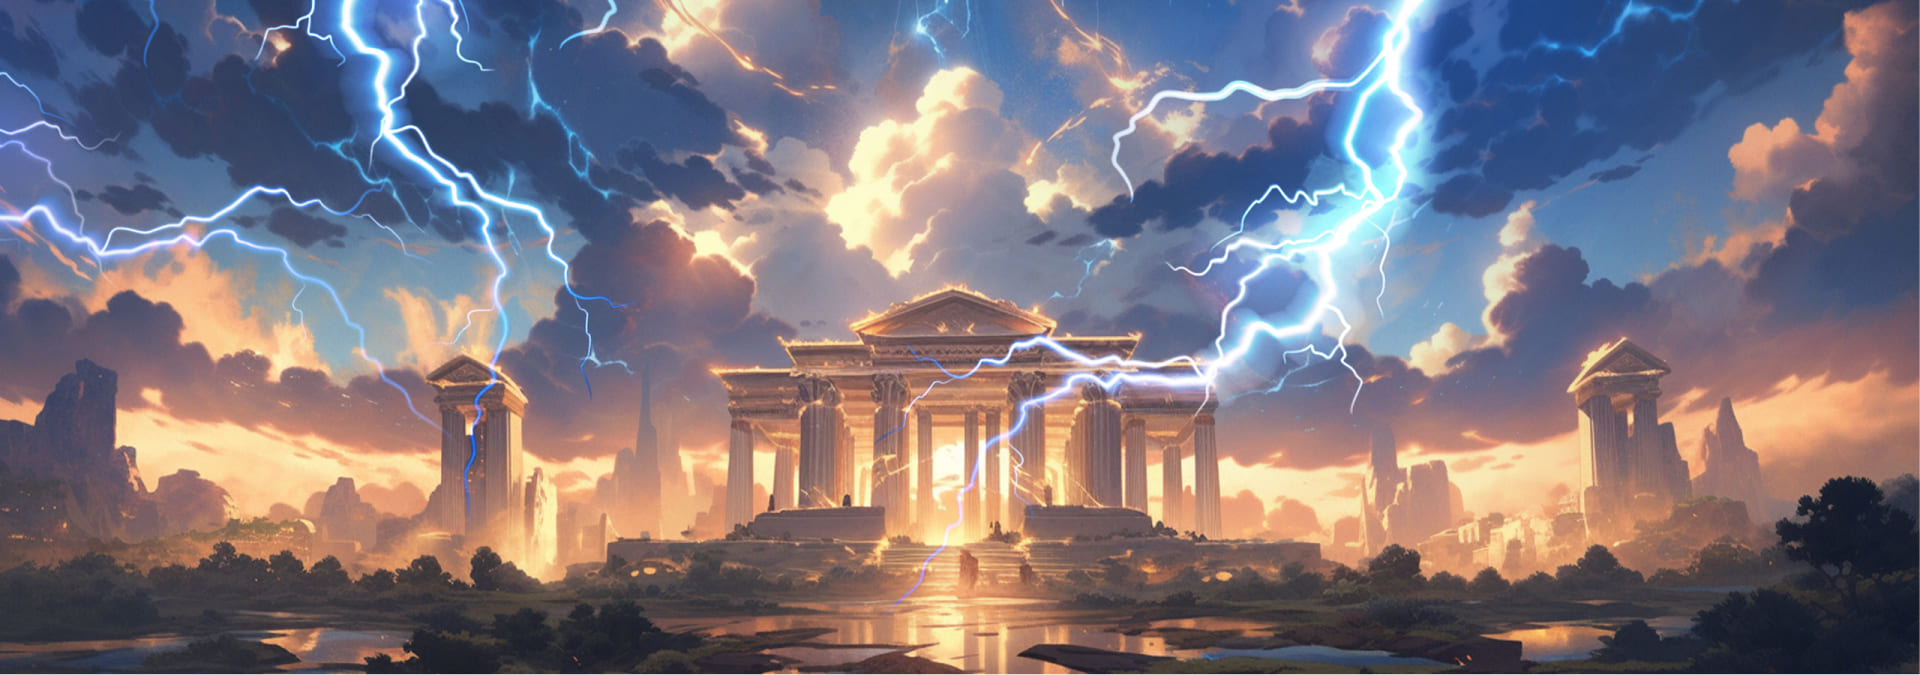 Wrath of Zeus's background